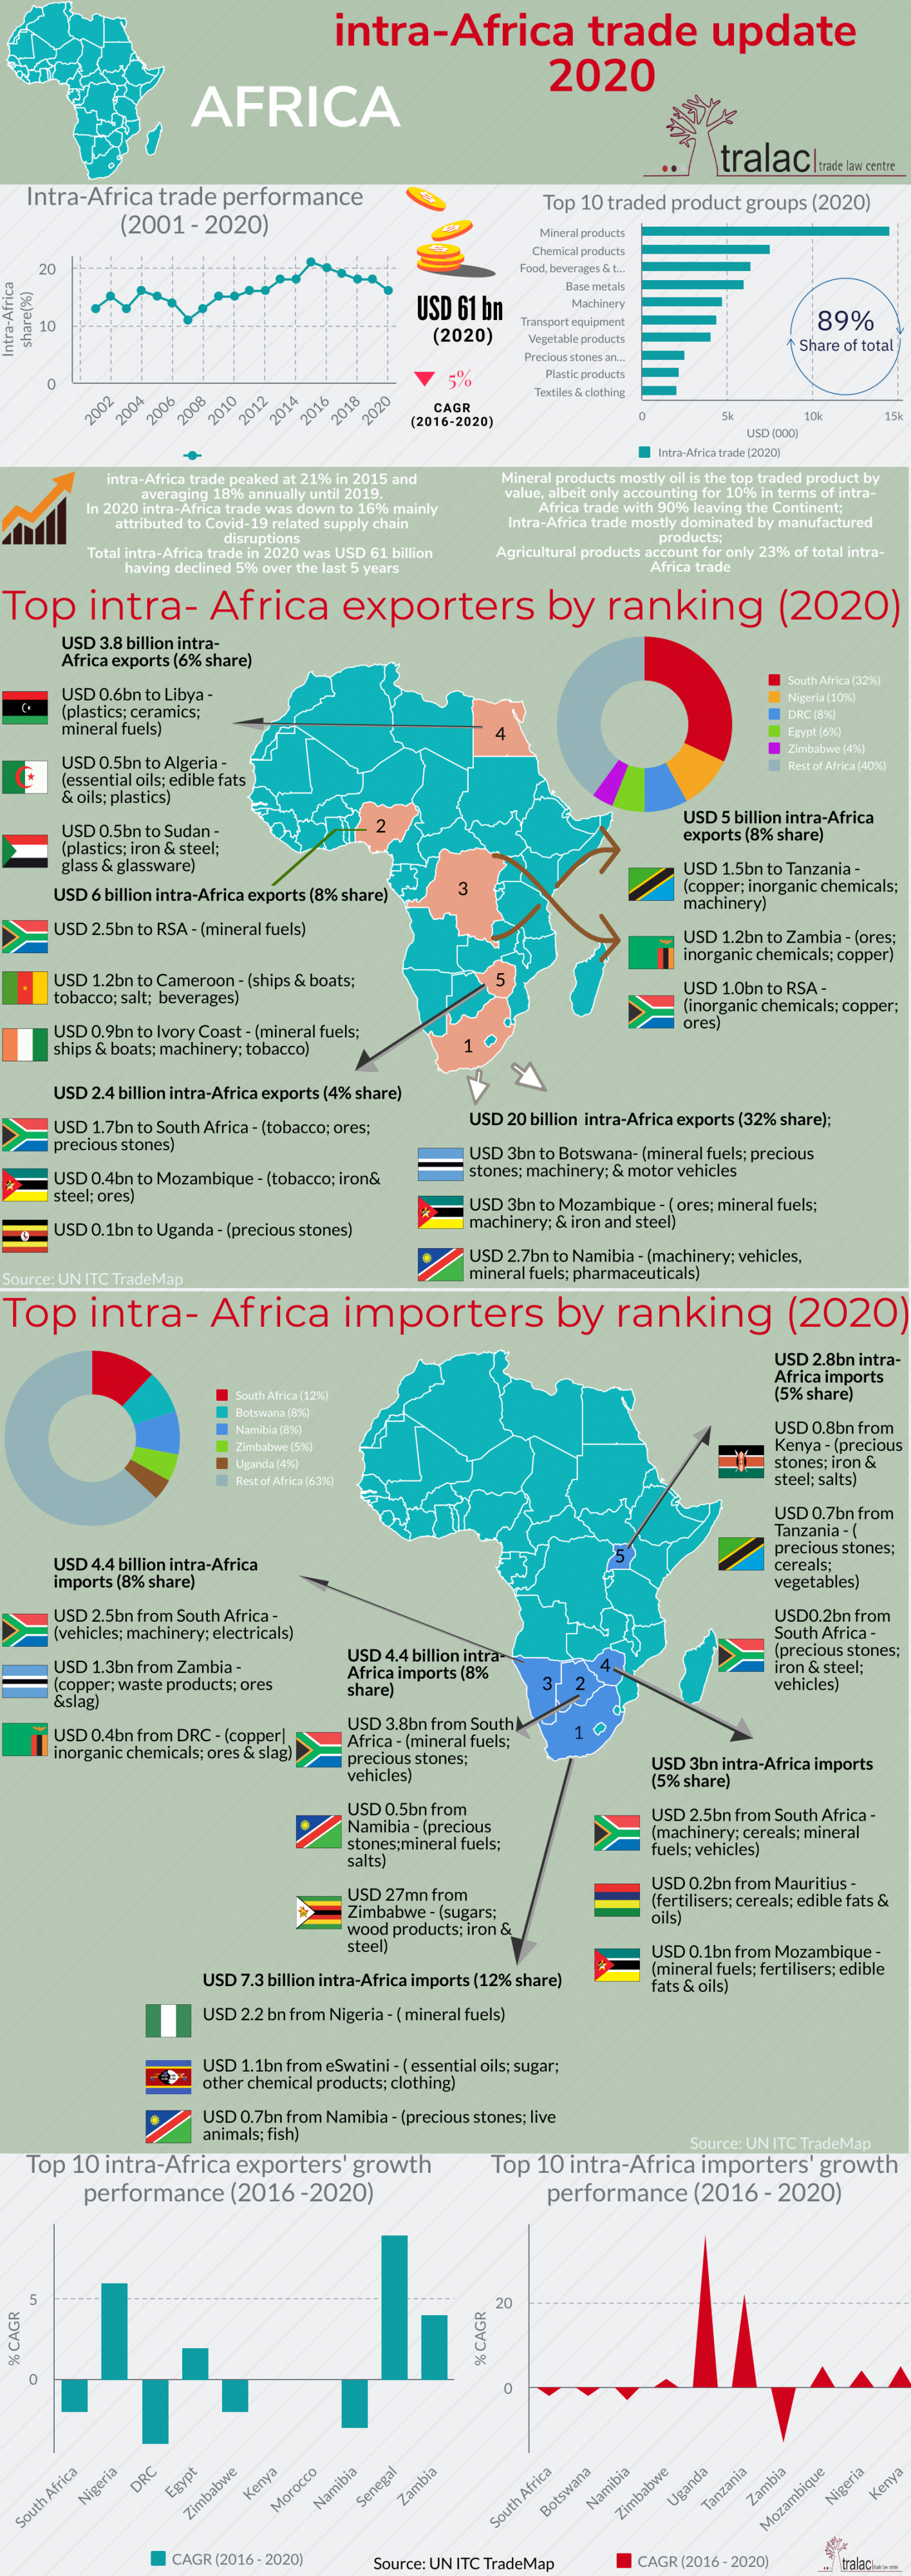 Intra-Africa trade update 2020